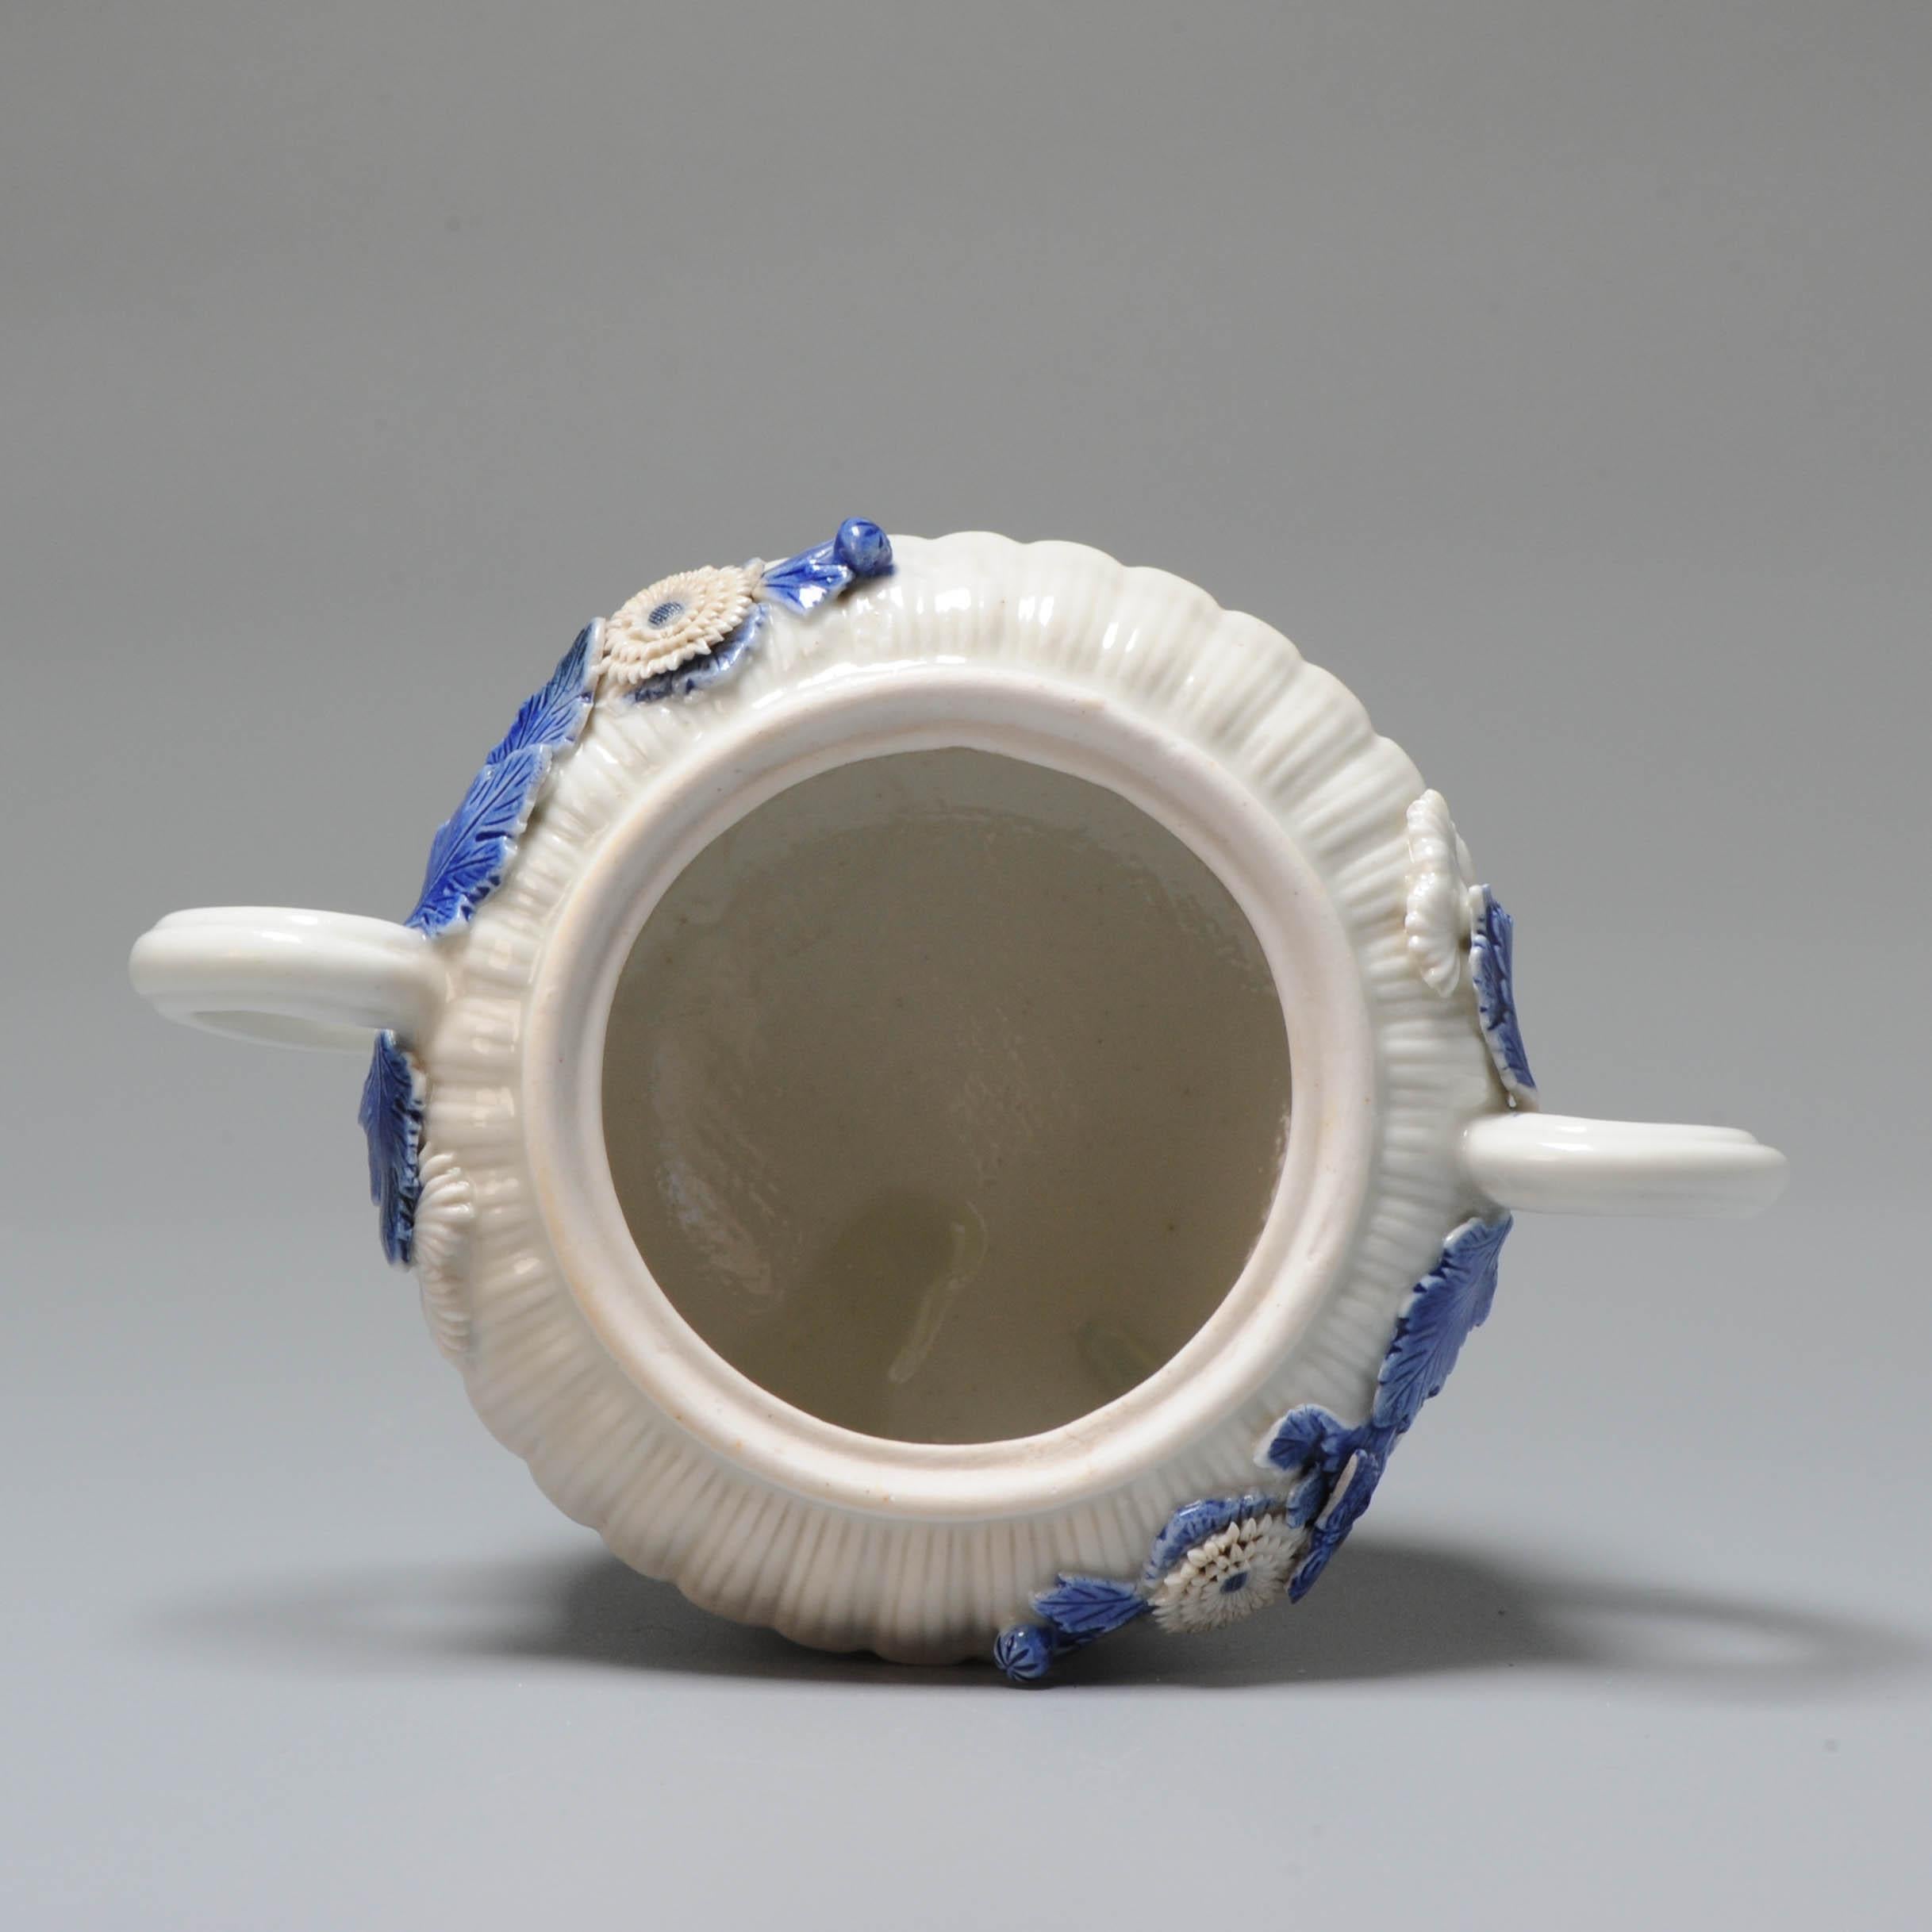 Il s'agit d'un pot à sucre joliment façonné et décoré.

Objet en porcelaine peint à la main avec des émaux bleus surglacés et sous glaçure. Il est doté d'une belle porcelaine blanche. Les appliques de fleurs sont très belles.

Informations